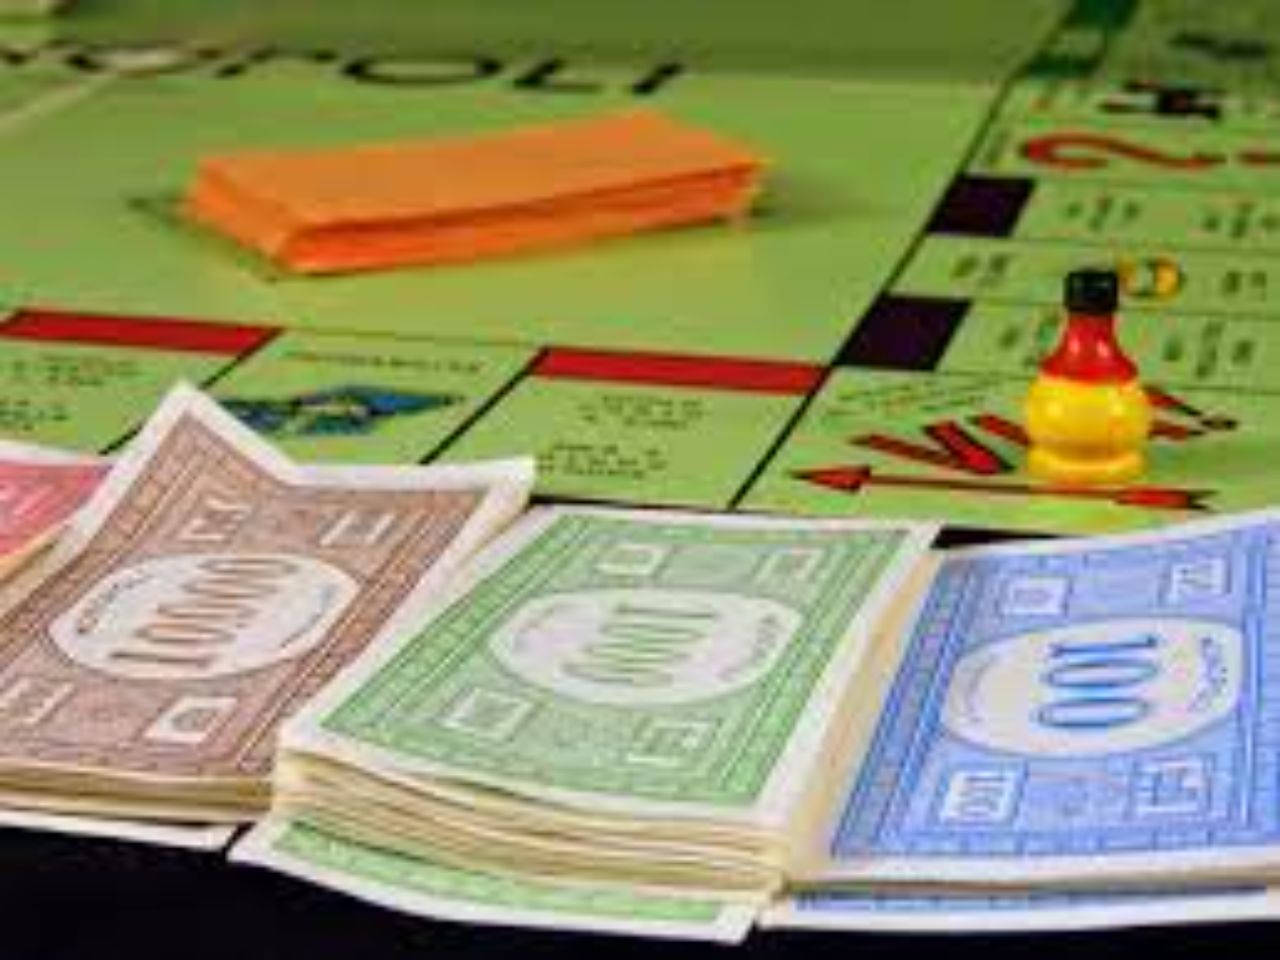 Cercare la vittoria tra le vie di Fano, arriva il Monopoly ambientato nella Città della fortuna